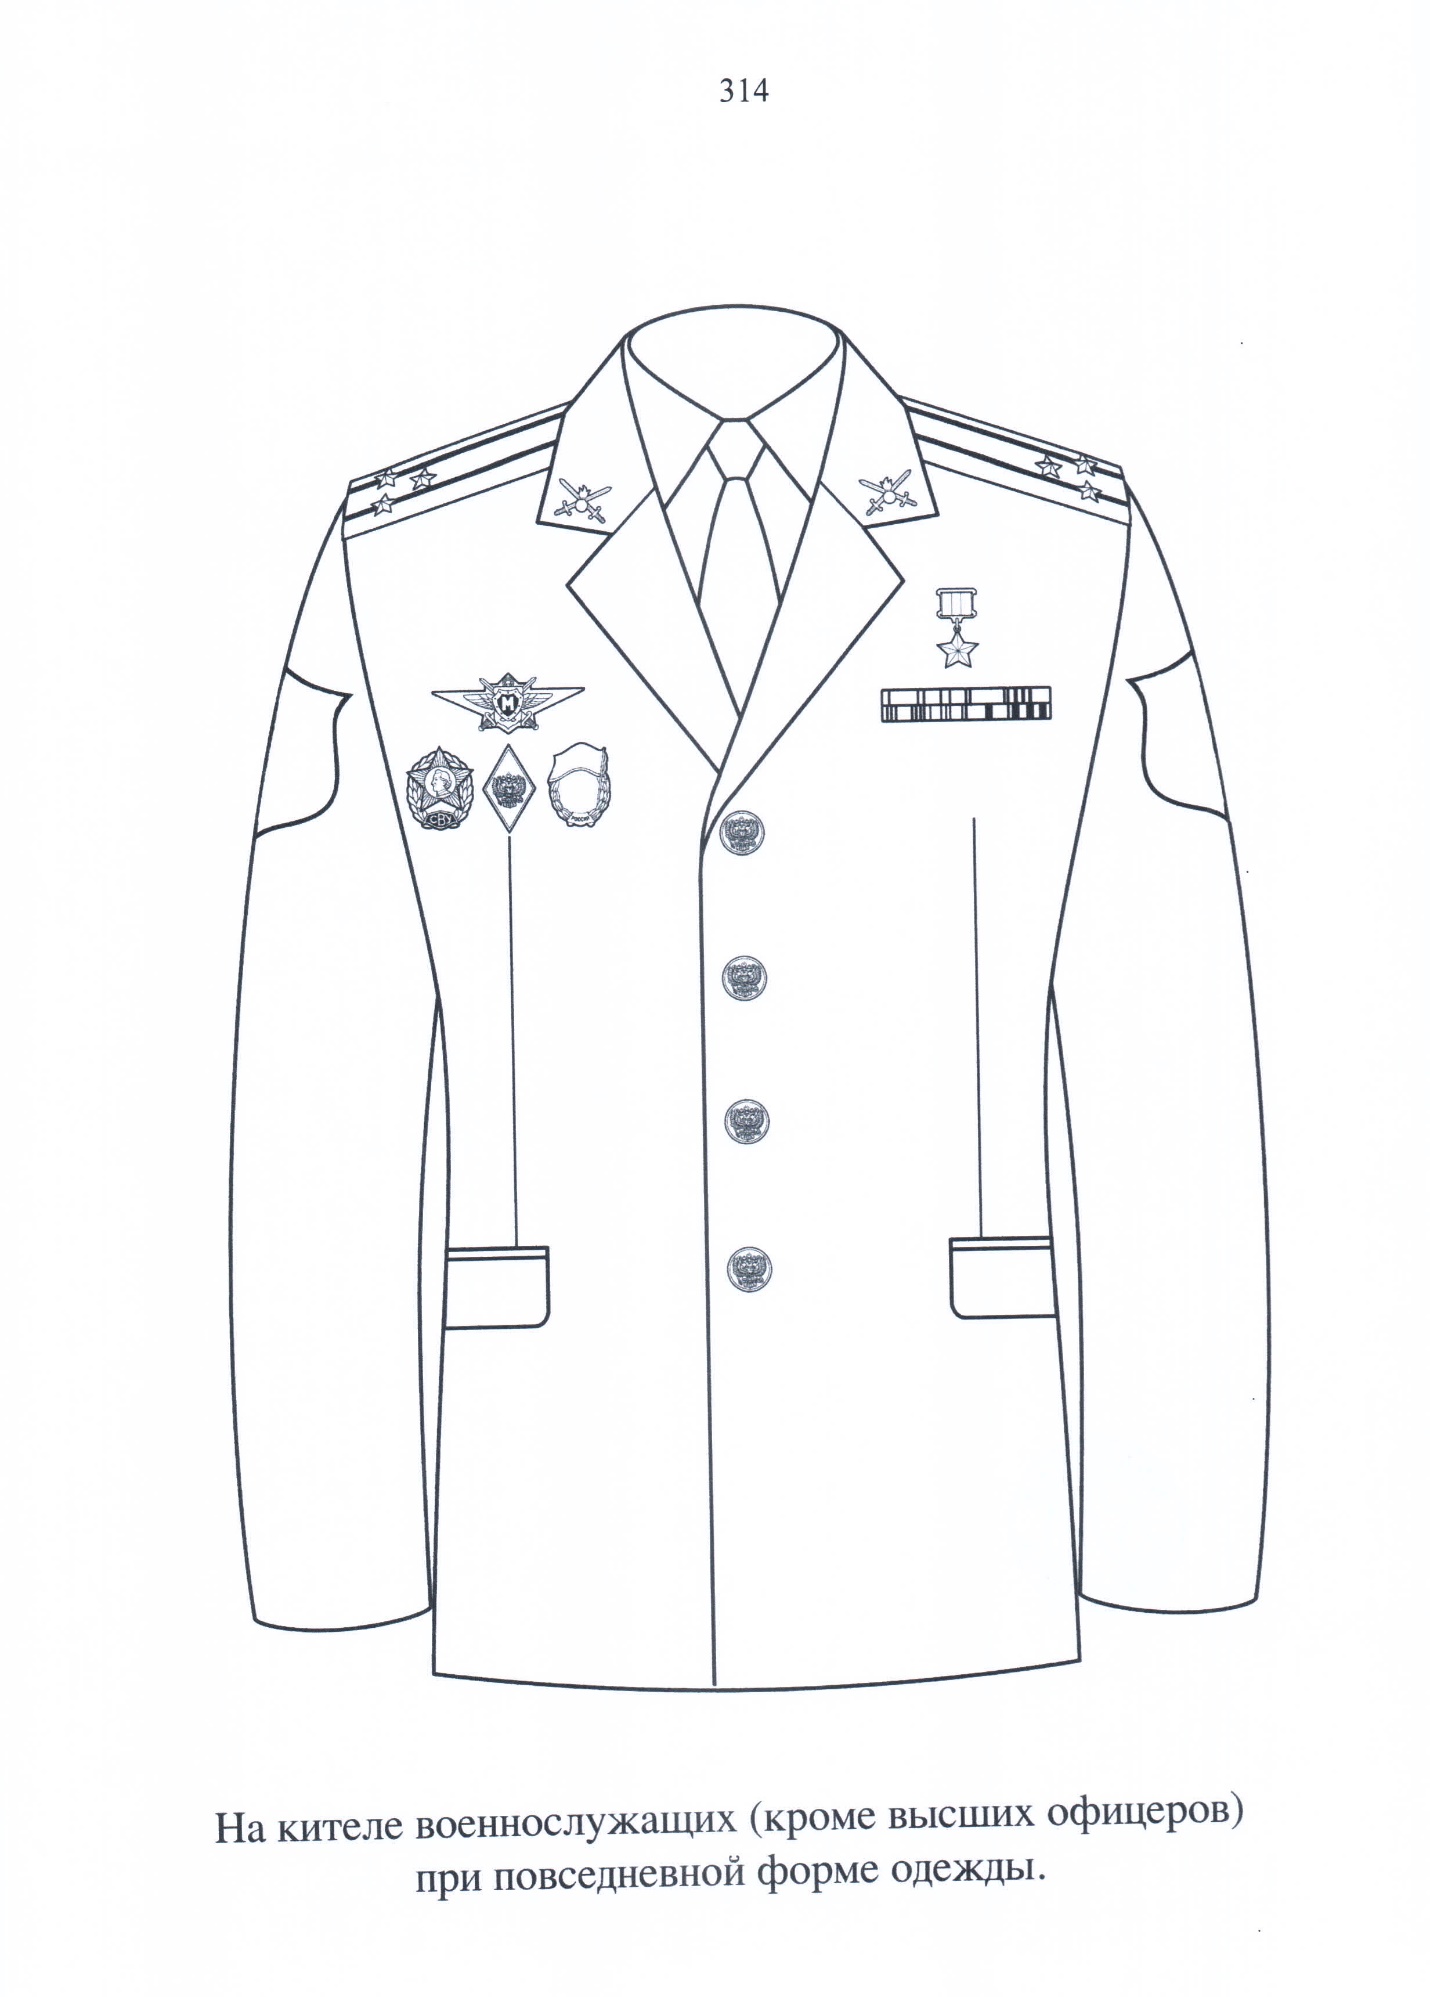 Положение формы одежды для кадетских классов